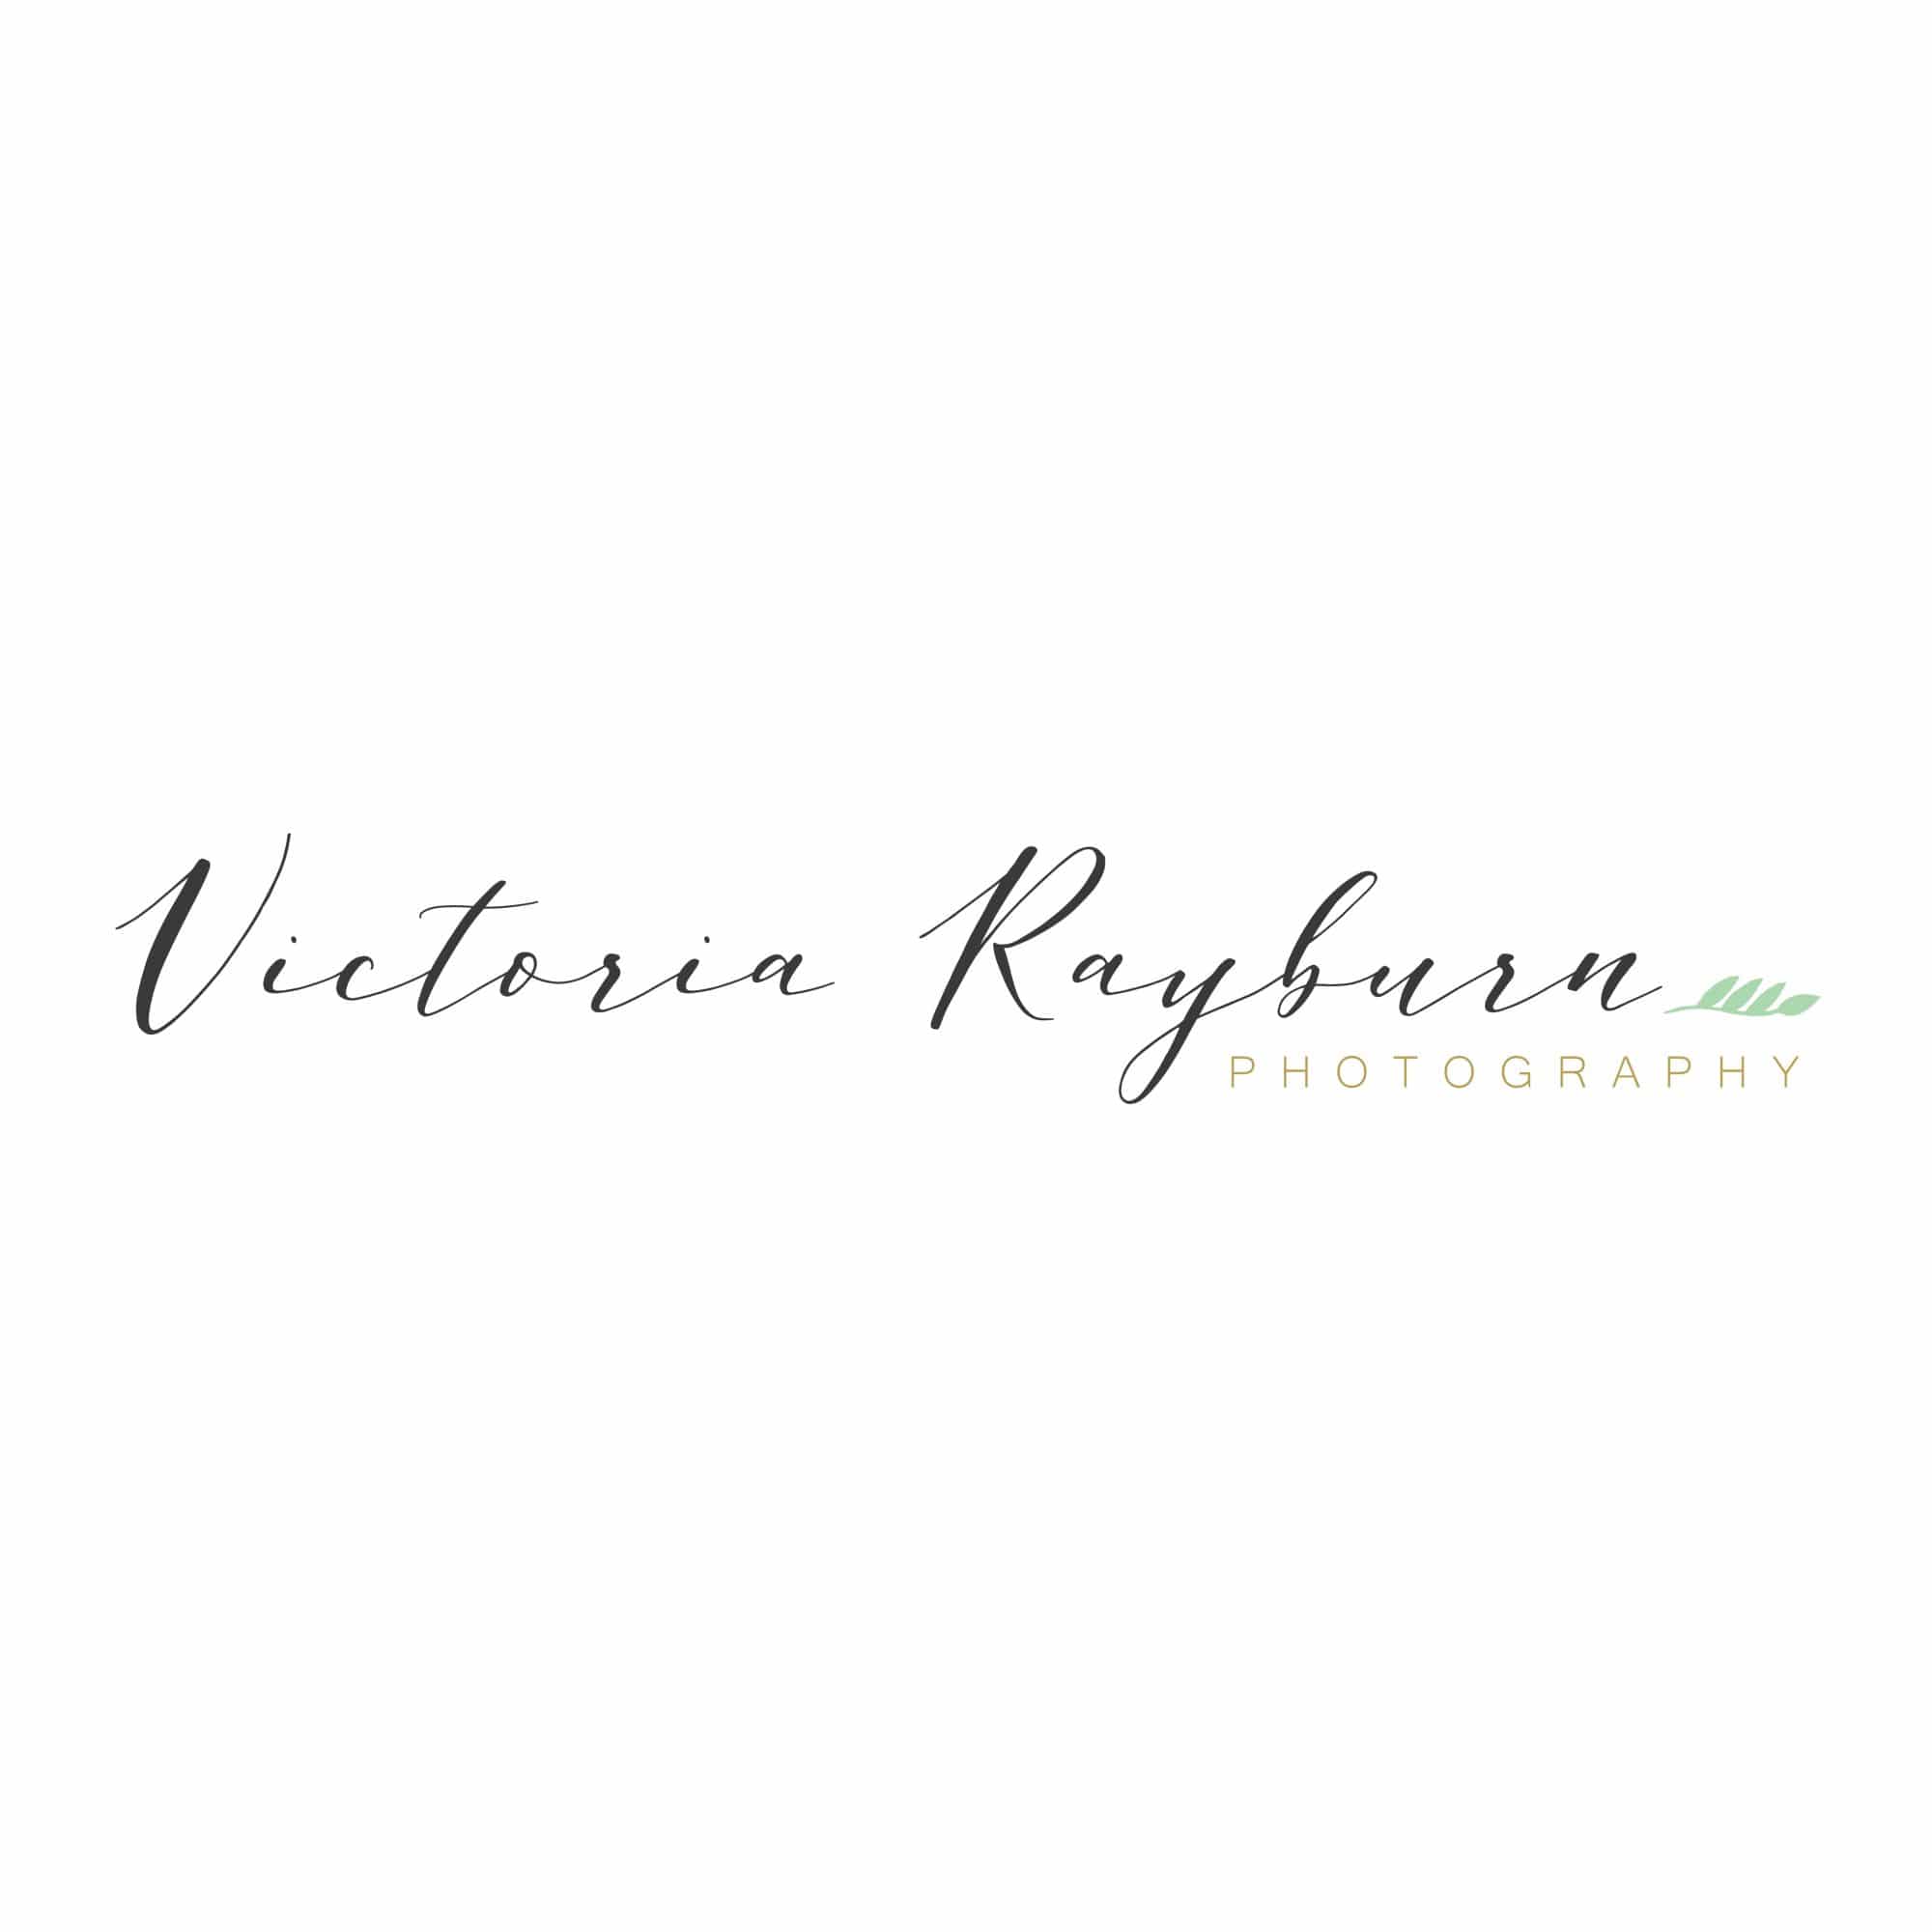 Victoria Rayburn Photography | Lafayette, Indiana Photographer | Wedding Photographers in Lafayette, Indiana | Family Photographers in Lafayette, Indiana